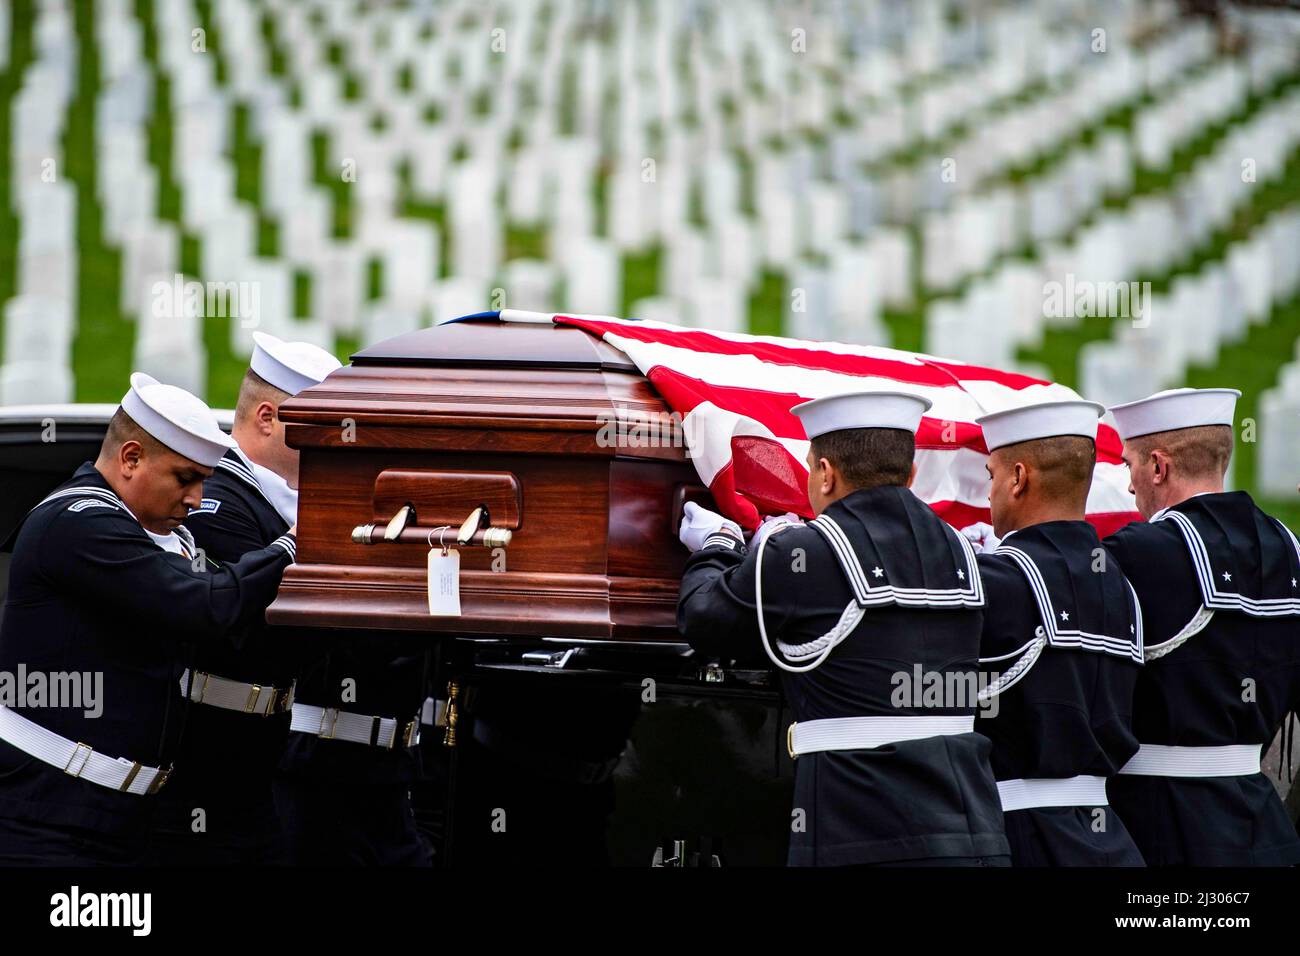 24 de marzo de 2022 - Arlington, Virginia, EE.UU. - Marineros de la Guardia Ceremonial de la Marina de EE.UU., la Banda Ceremonial de la Marina de EE.UU., Y el Regimiento de Infantería de EE.UU. de 3D (la Guardia Vieja) Caisson Platoon lleva a cabo funerales militares con escolta funeraria para la Marina de EE.UU. Seaman 1st Clase Walter Stein en la Sección 36 del Cementerio Nacional de Arlington, Arlington, Virginia, 24 de marzo de 2022. Stein fue asesinado durante el ataque en Pearl Harbor mientras servía a bordo del USS Oklahoma. (Imagen de crédito: © U.S. Army/ZUMA Press Wire Service/ZUMAPRESS.com) Foto de stock